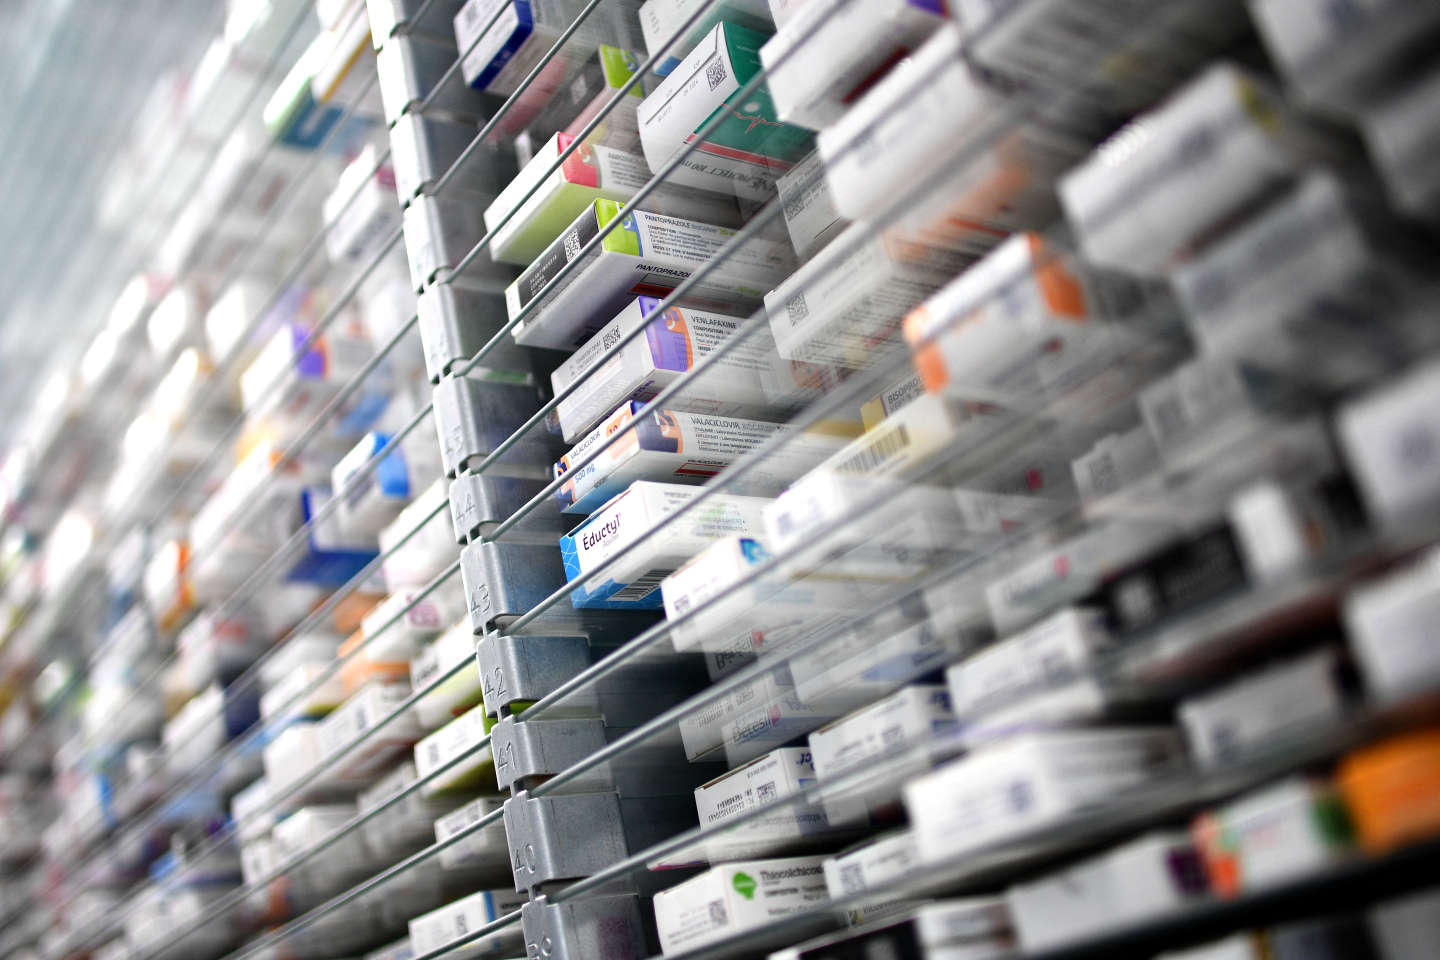 « La liste des médicaments essentiels devrait éliminer les thérapeutiques ayant des bénéfices douteux »